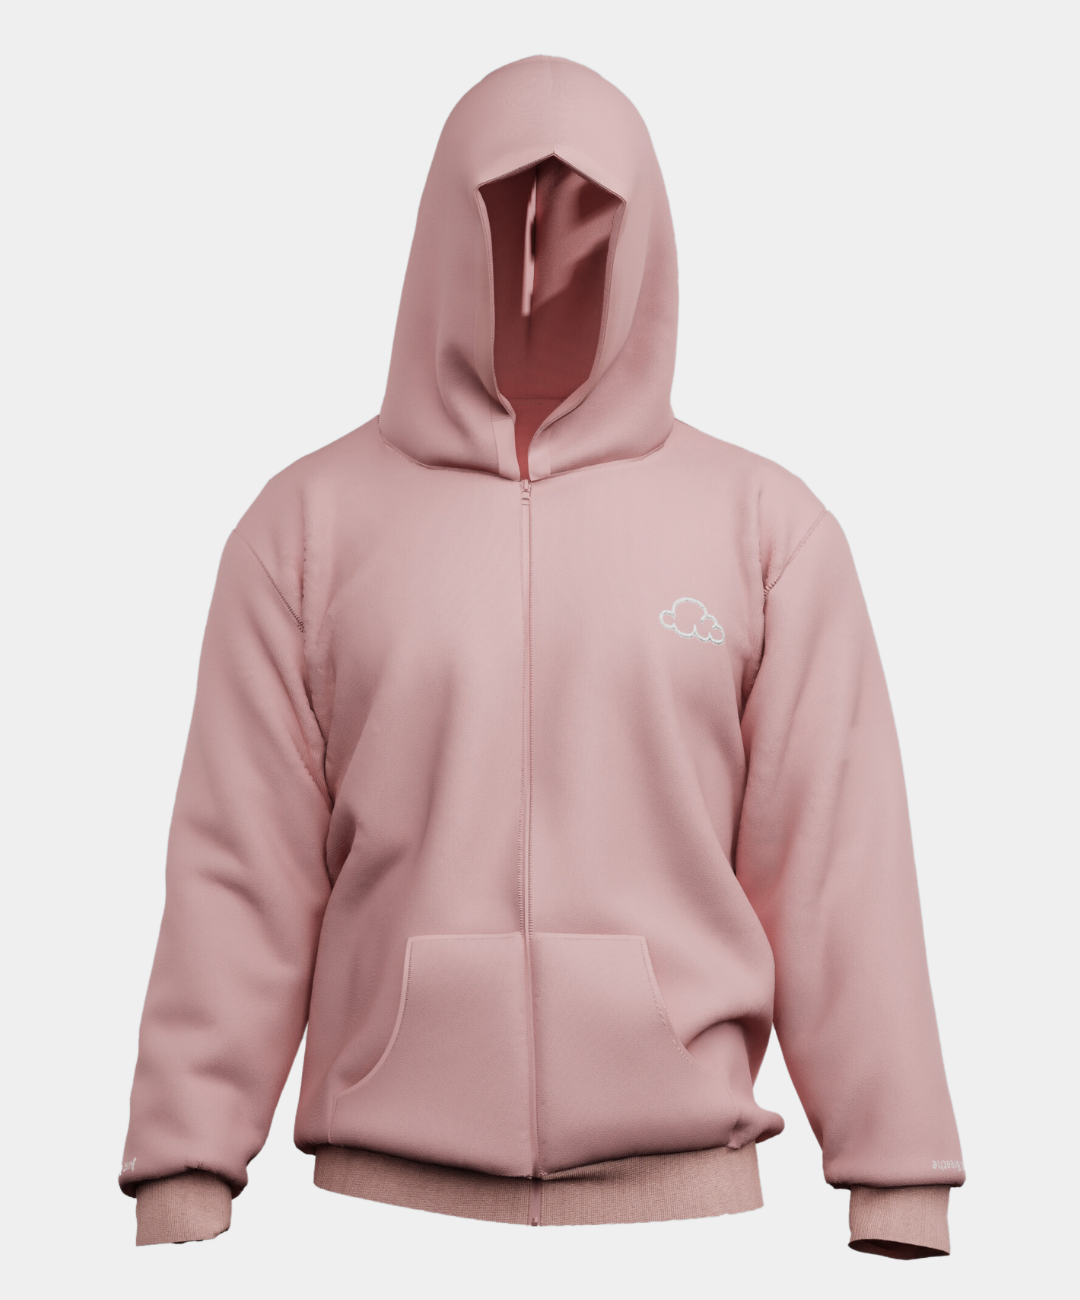 zip up hoodie - pink hoodie mens